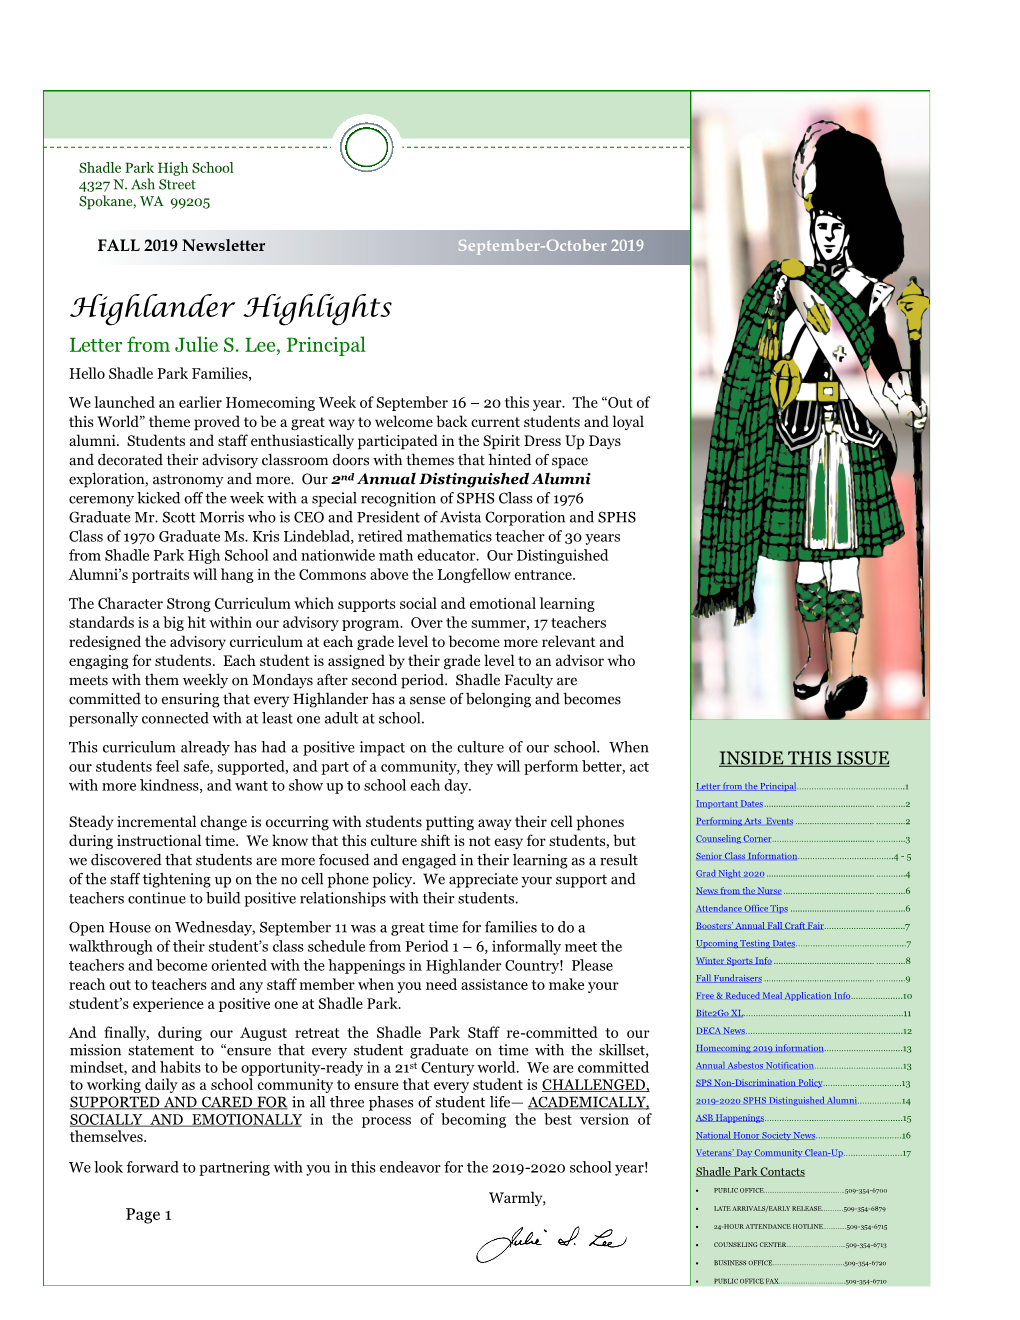 Highlander Highlights Letter from Julie S